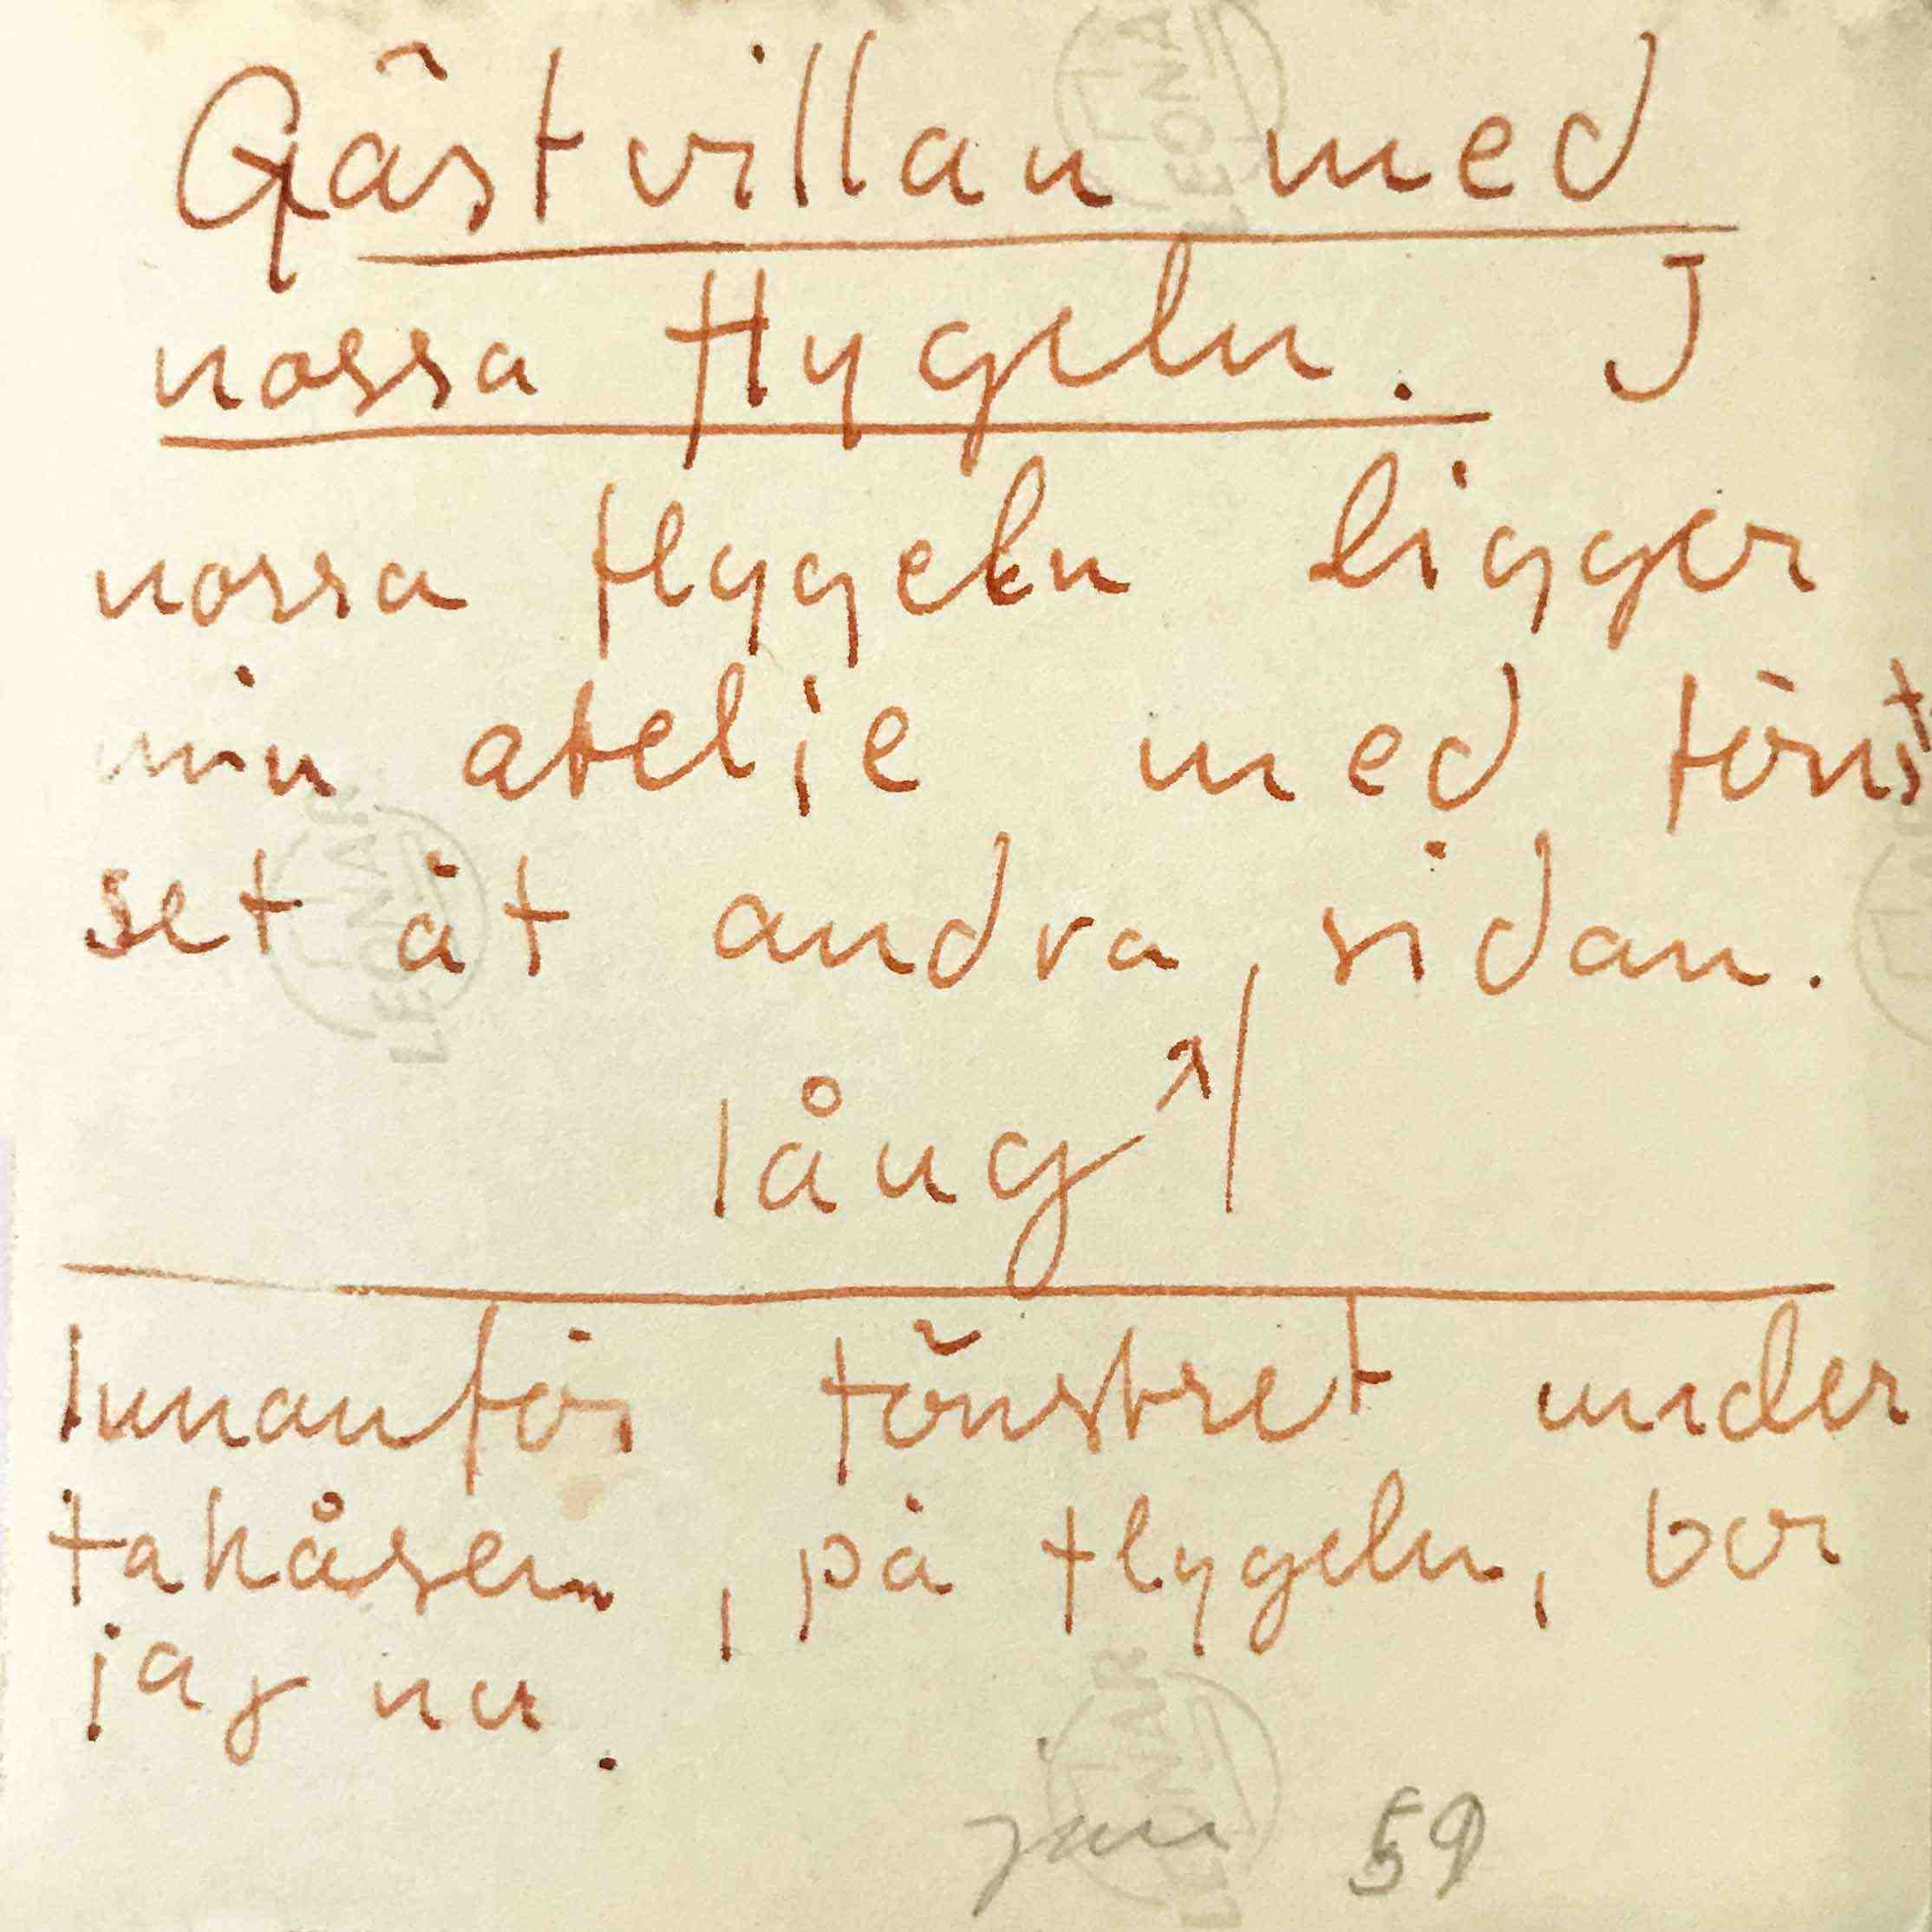 Baksida av kortet, som skickats till Birgitta inför flytten till Orrefors.